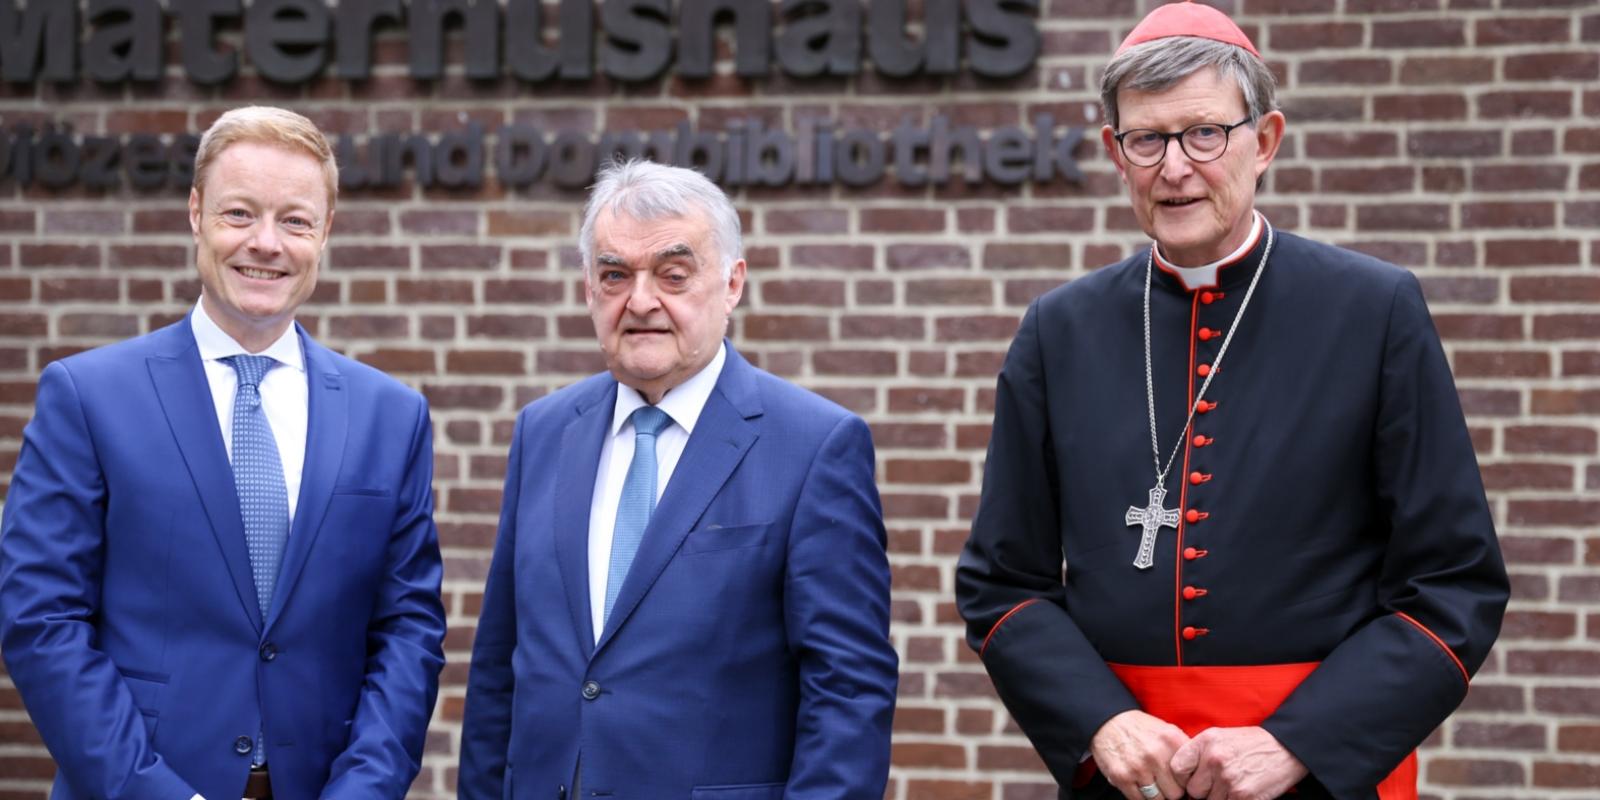 v.l. Thomas Pitsch (Bereichsleiter Schule& Hochschule), Herbert Reul (Minister des Innern des Landes Nordrhein-Westfalen), Rainer Maria Kardinal Woelki (Erzbischof von Köln)